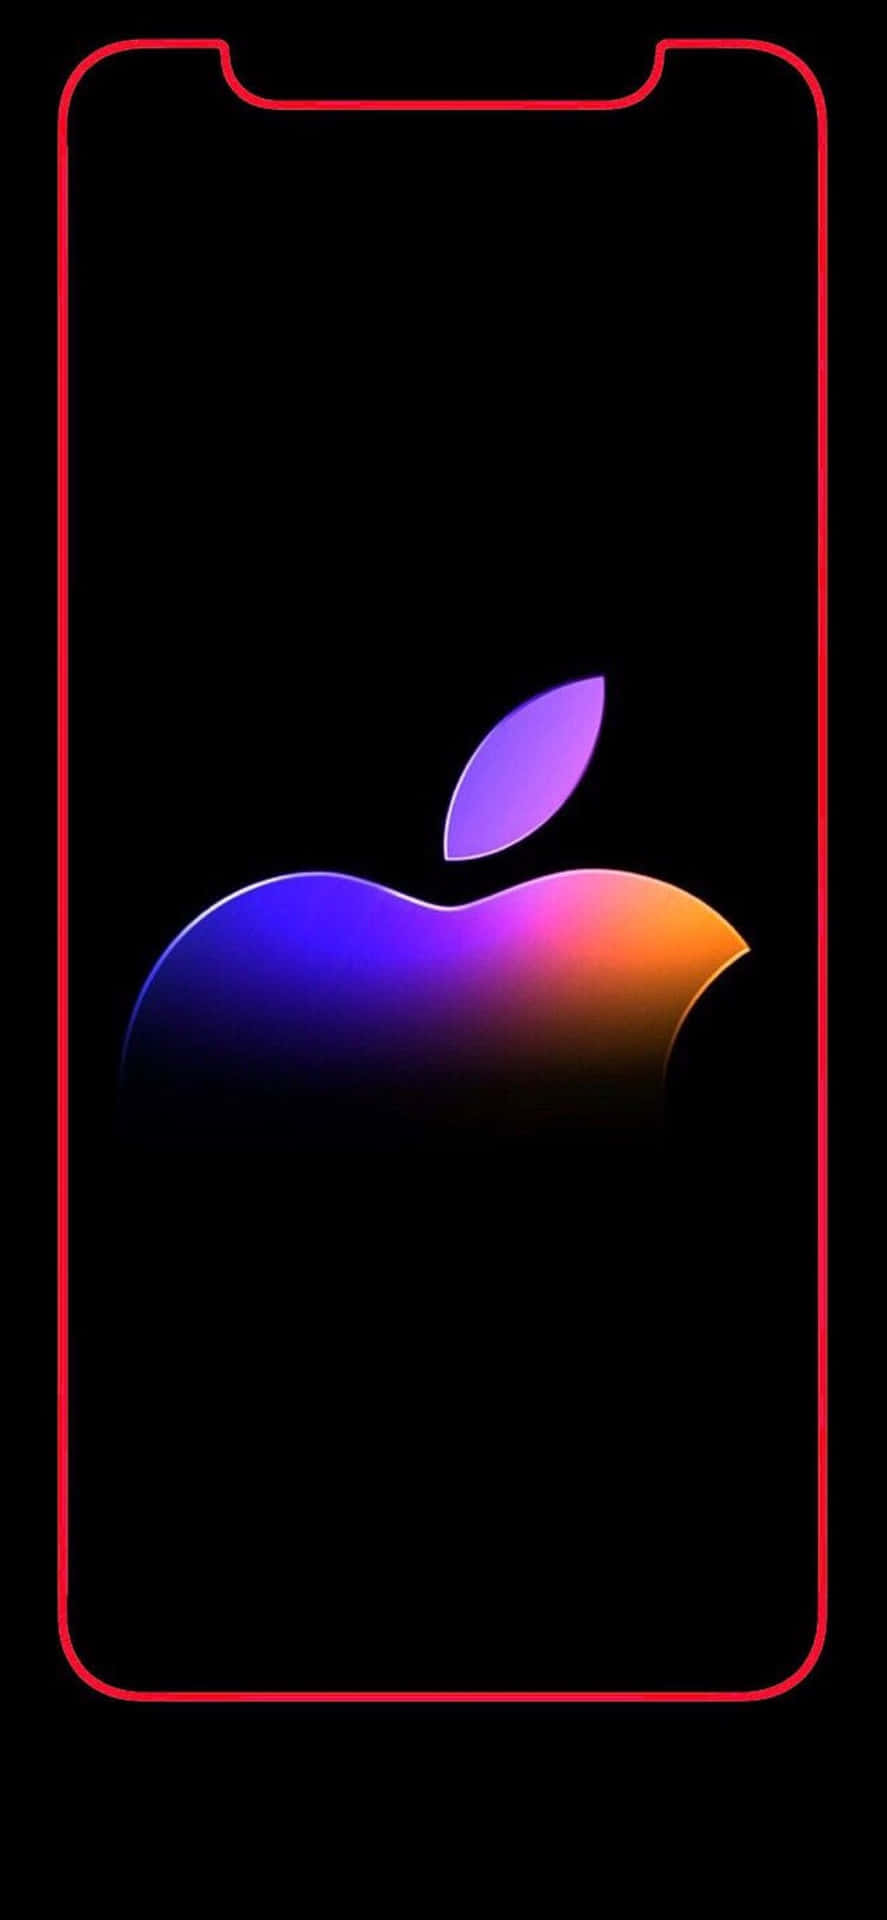 Denikoniska Apple-logotypen Som Finns På Baksidan Av Iphone X. Wallpaper